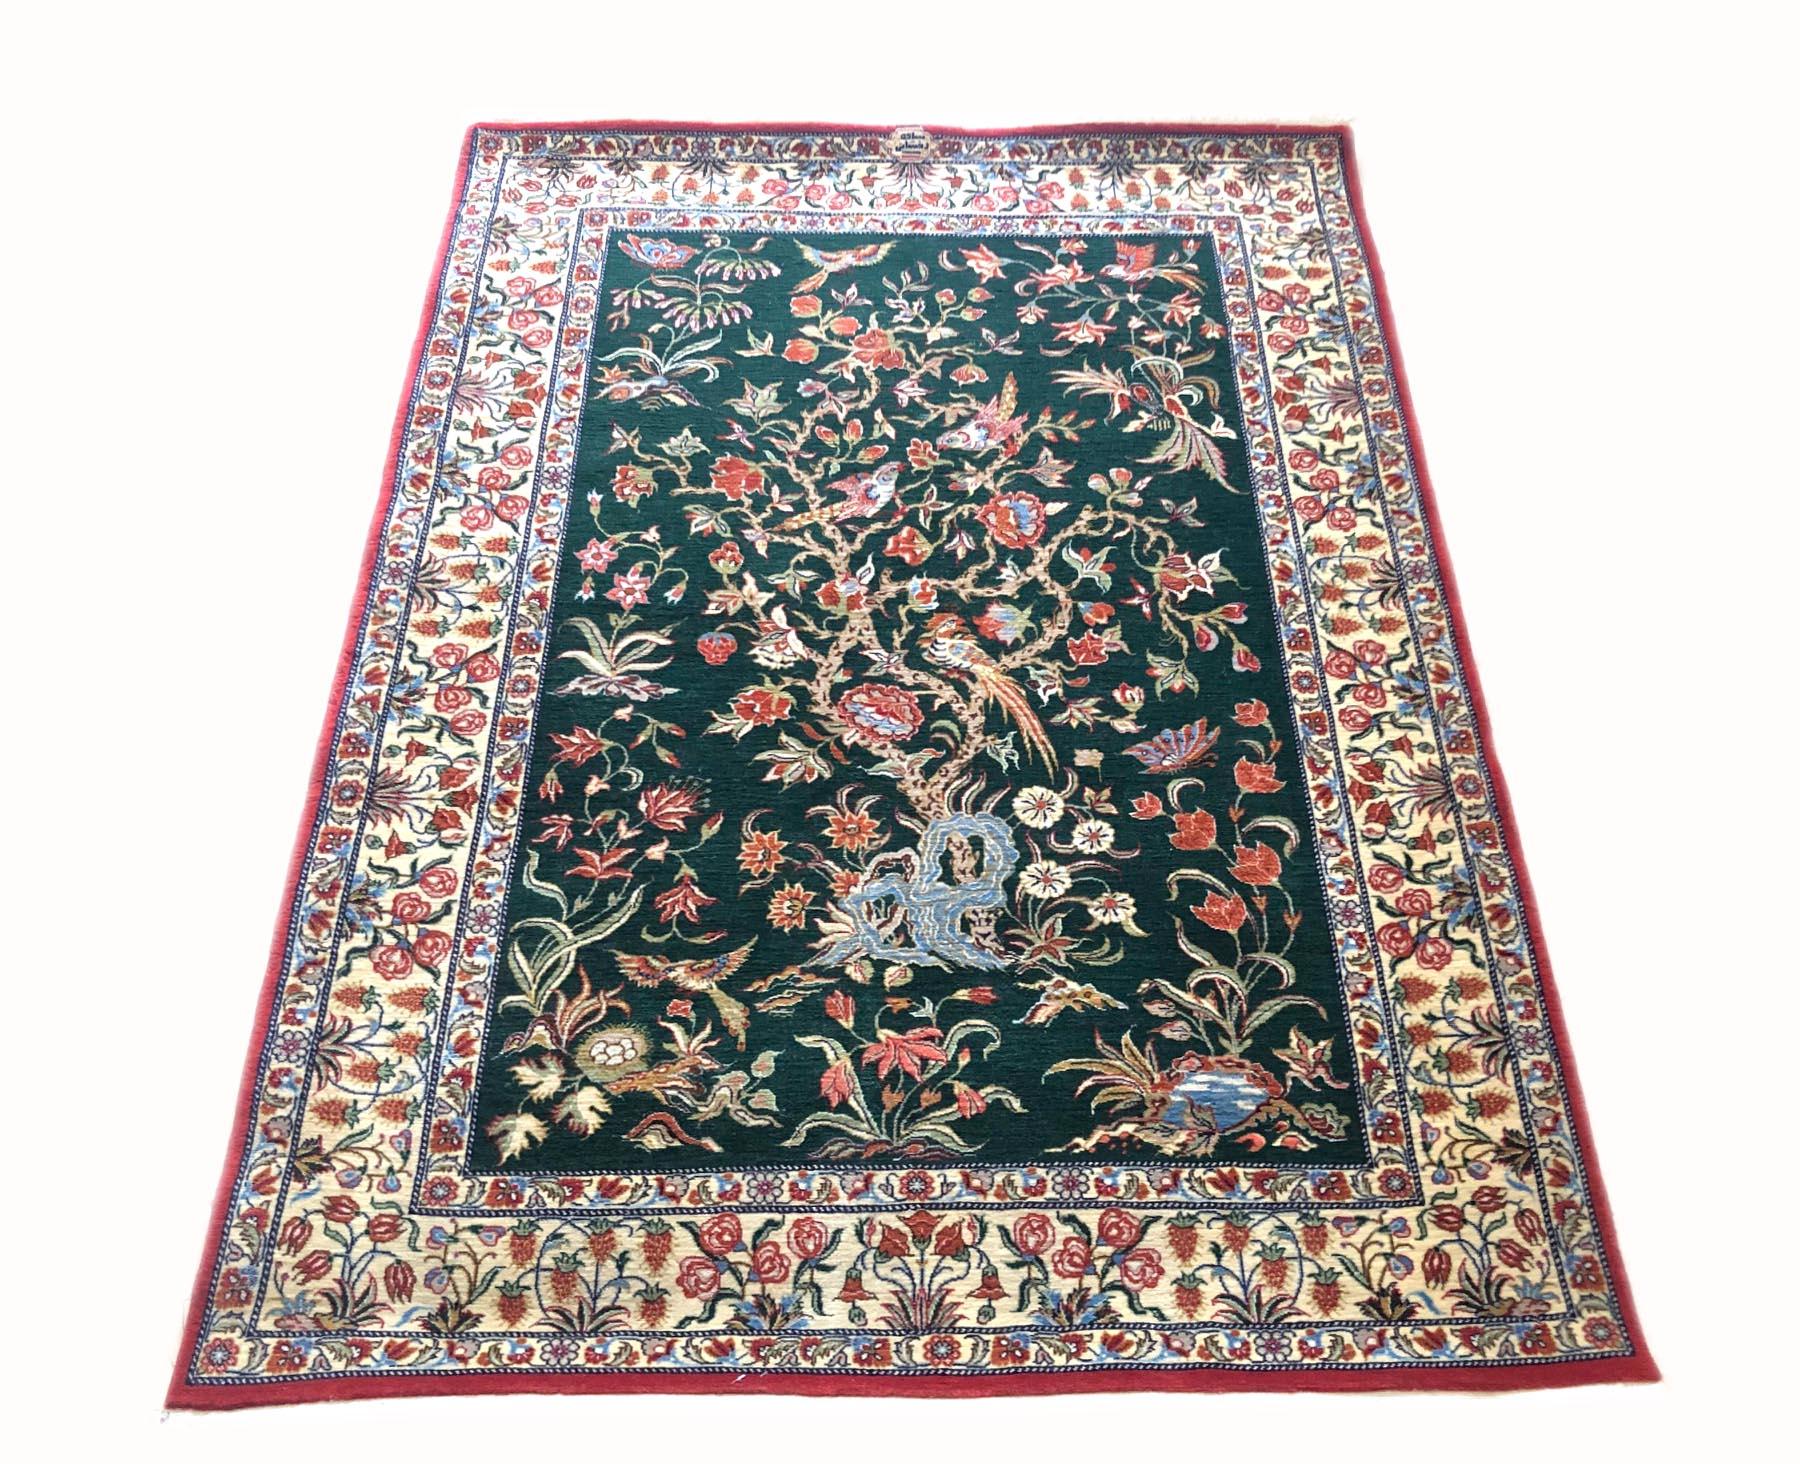 Ce magnifique tapis persan Qum est composé de poils de laine et d'une base en coton. La taille est de 3 pieds 3 pouces par 4 pieds 8 pouces. Le motif représente l'arbre de vie, un élément populaire dans de nombreux tapis persans anciens, et l'un des